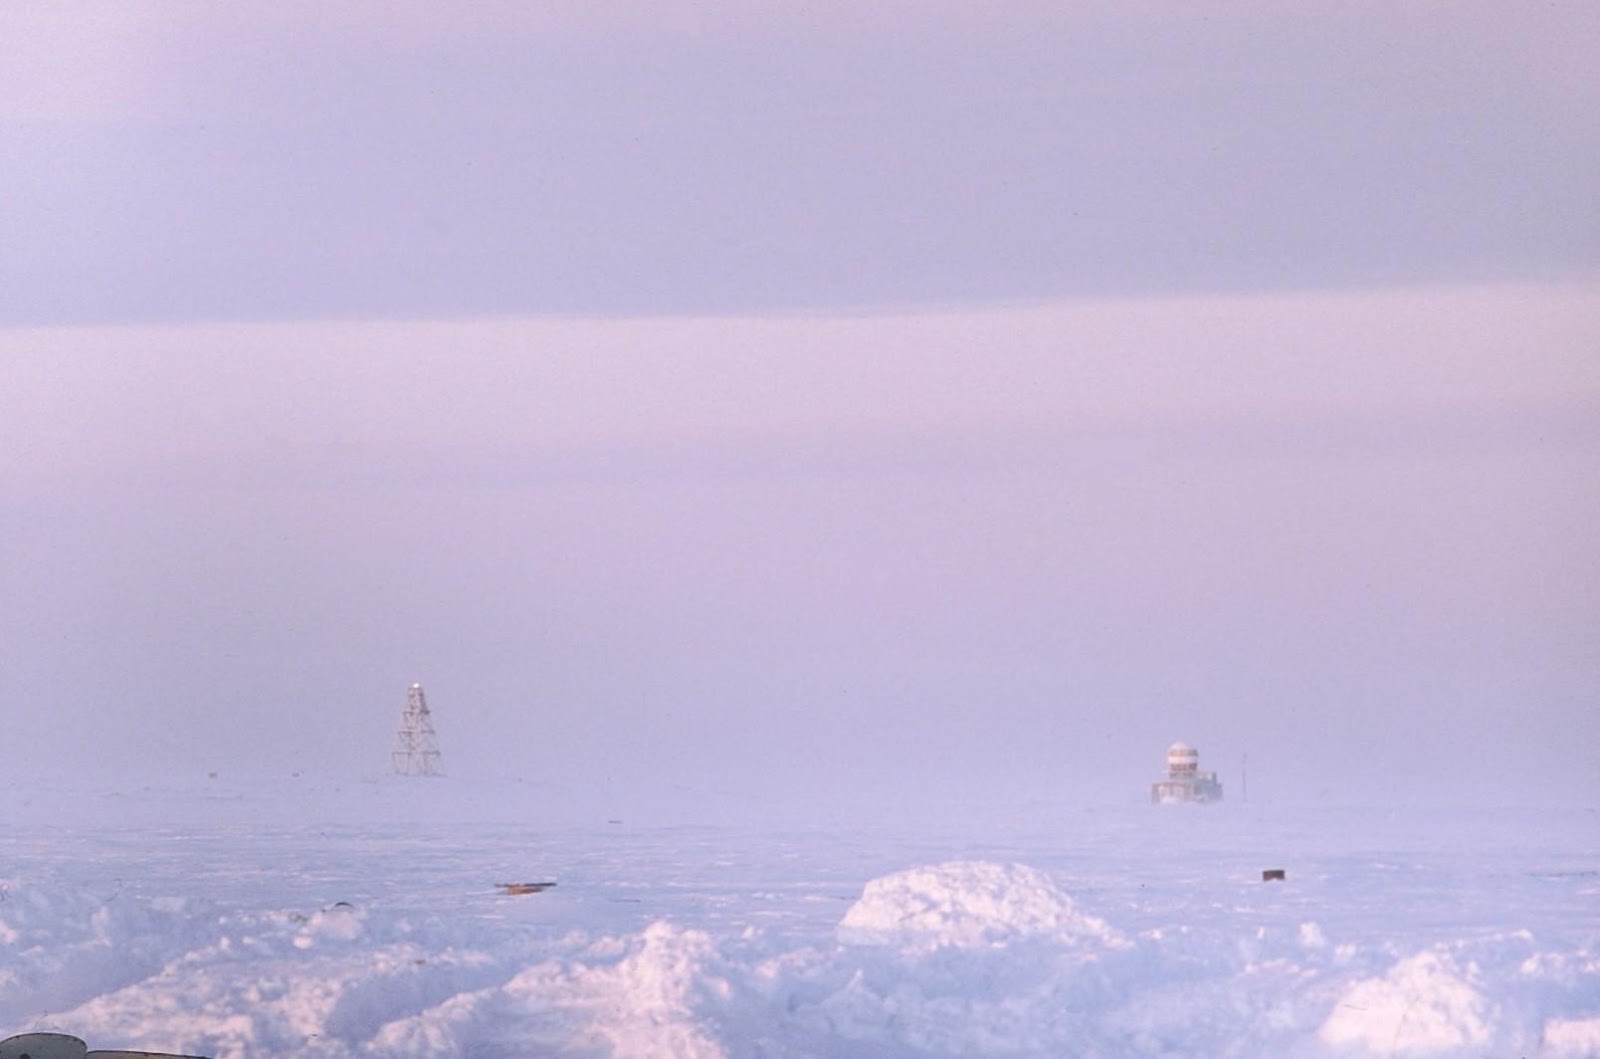 Остров челюскин. Таймыр мыс Челюскин. Полуостров Таймыр мыс Челюскин. Маяк мыса Челюскин. Большой Арктический заповедник мыс Челюскин.